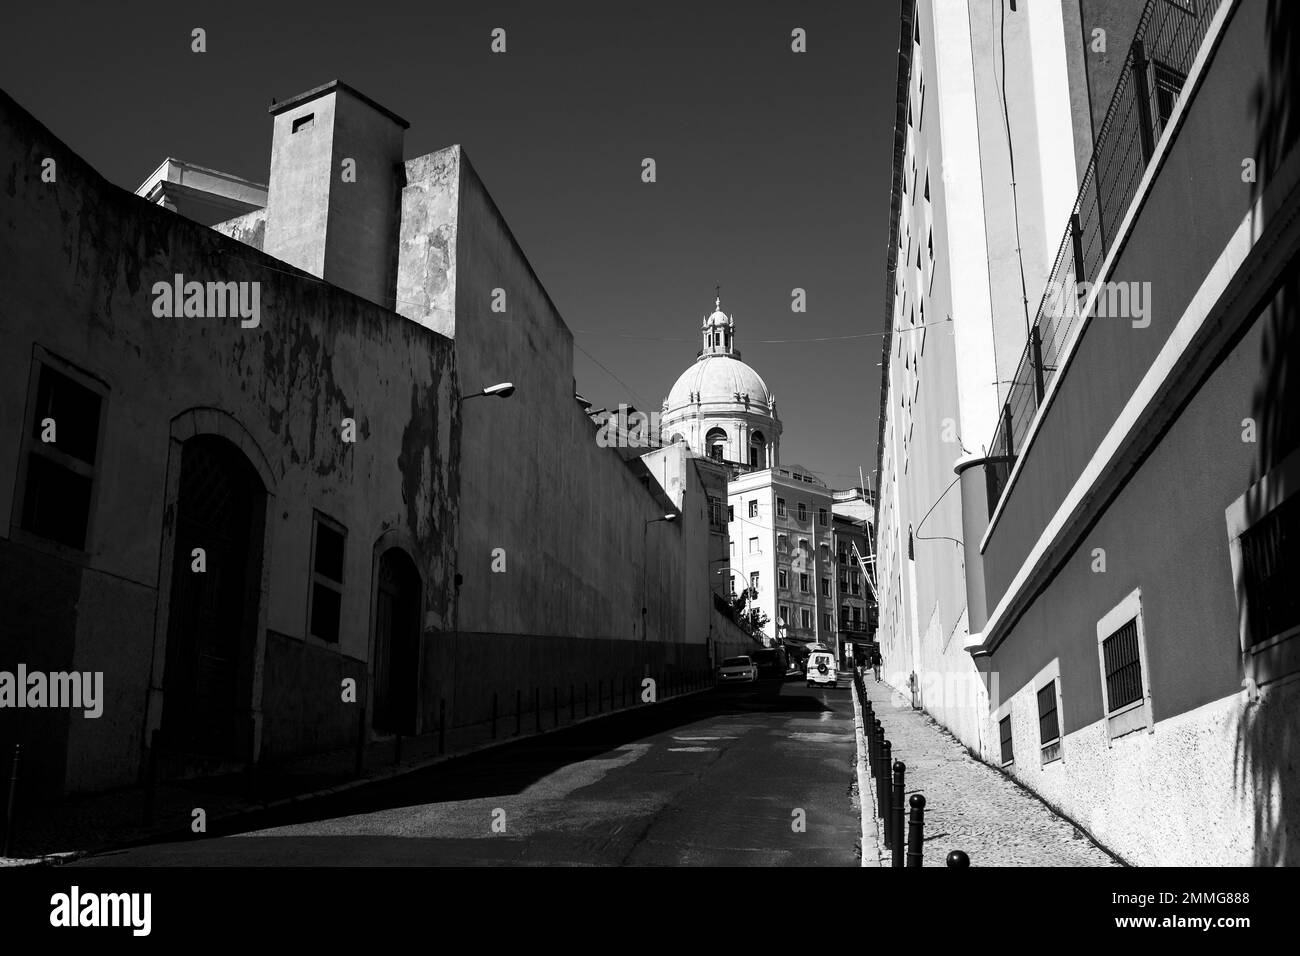 Eine der Straßen des Alfama-Viertels, die Kirche Santa Engracia, das alte Zentrum von Lissabon. Schwarzweiß-Foto. Stockfoto